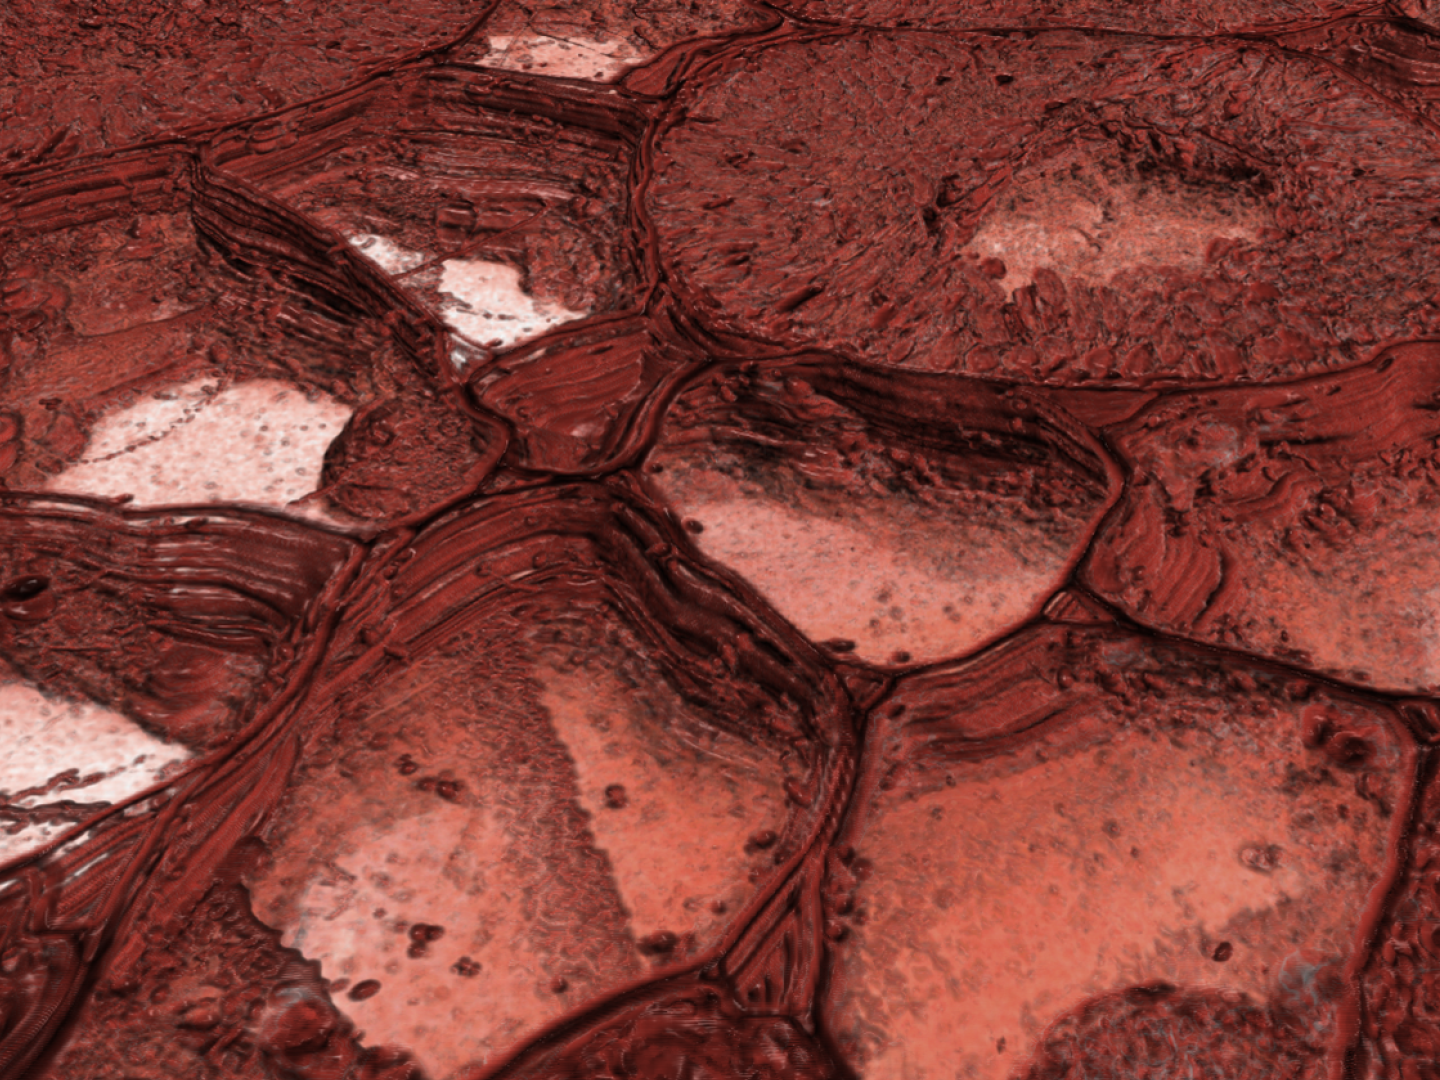 ウマゴヤシの根粒。Atlas 5 Array TomographyでイメージングしたSEM画像。